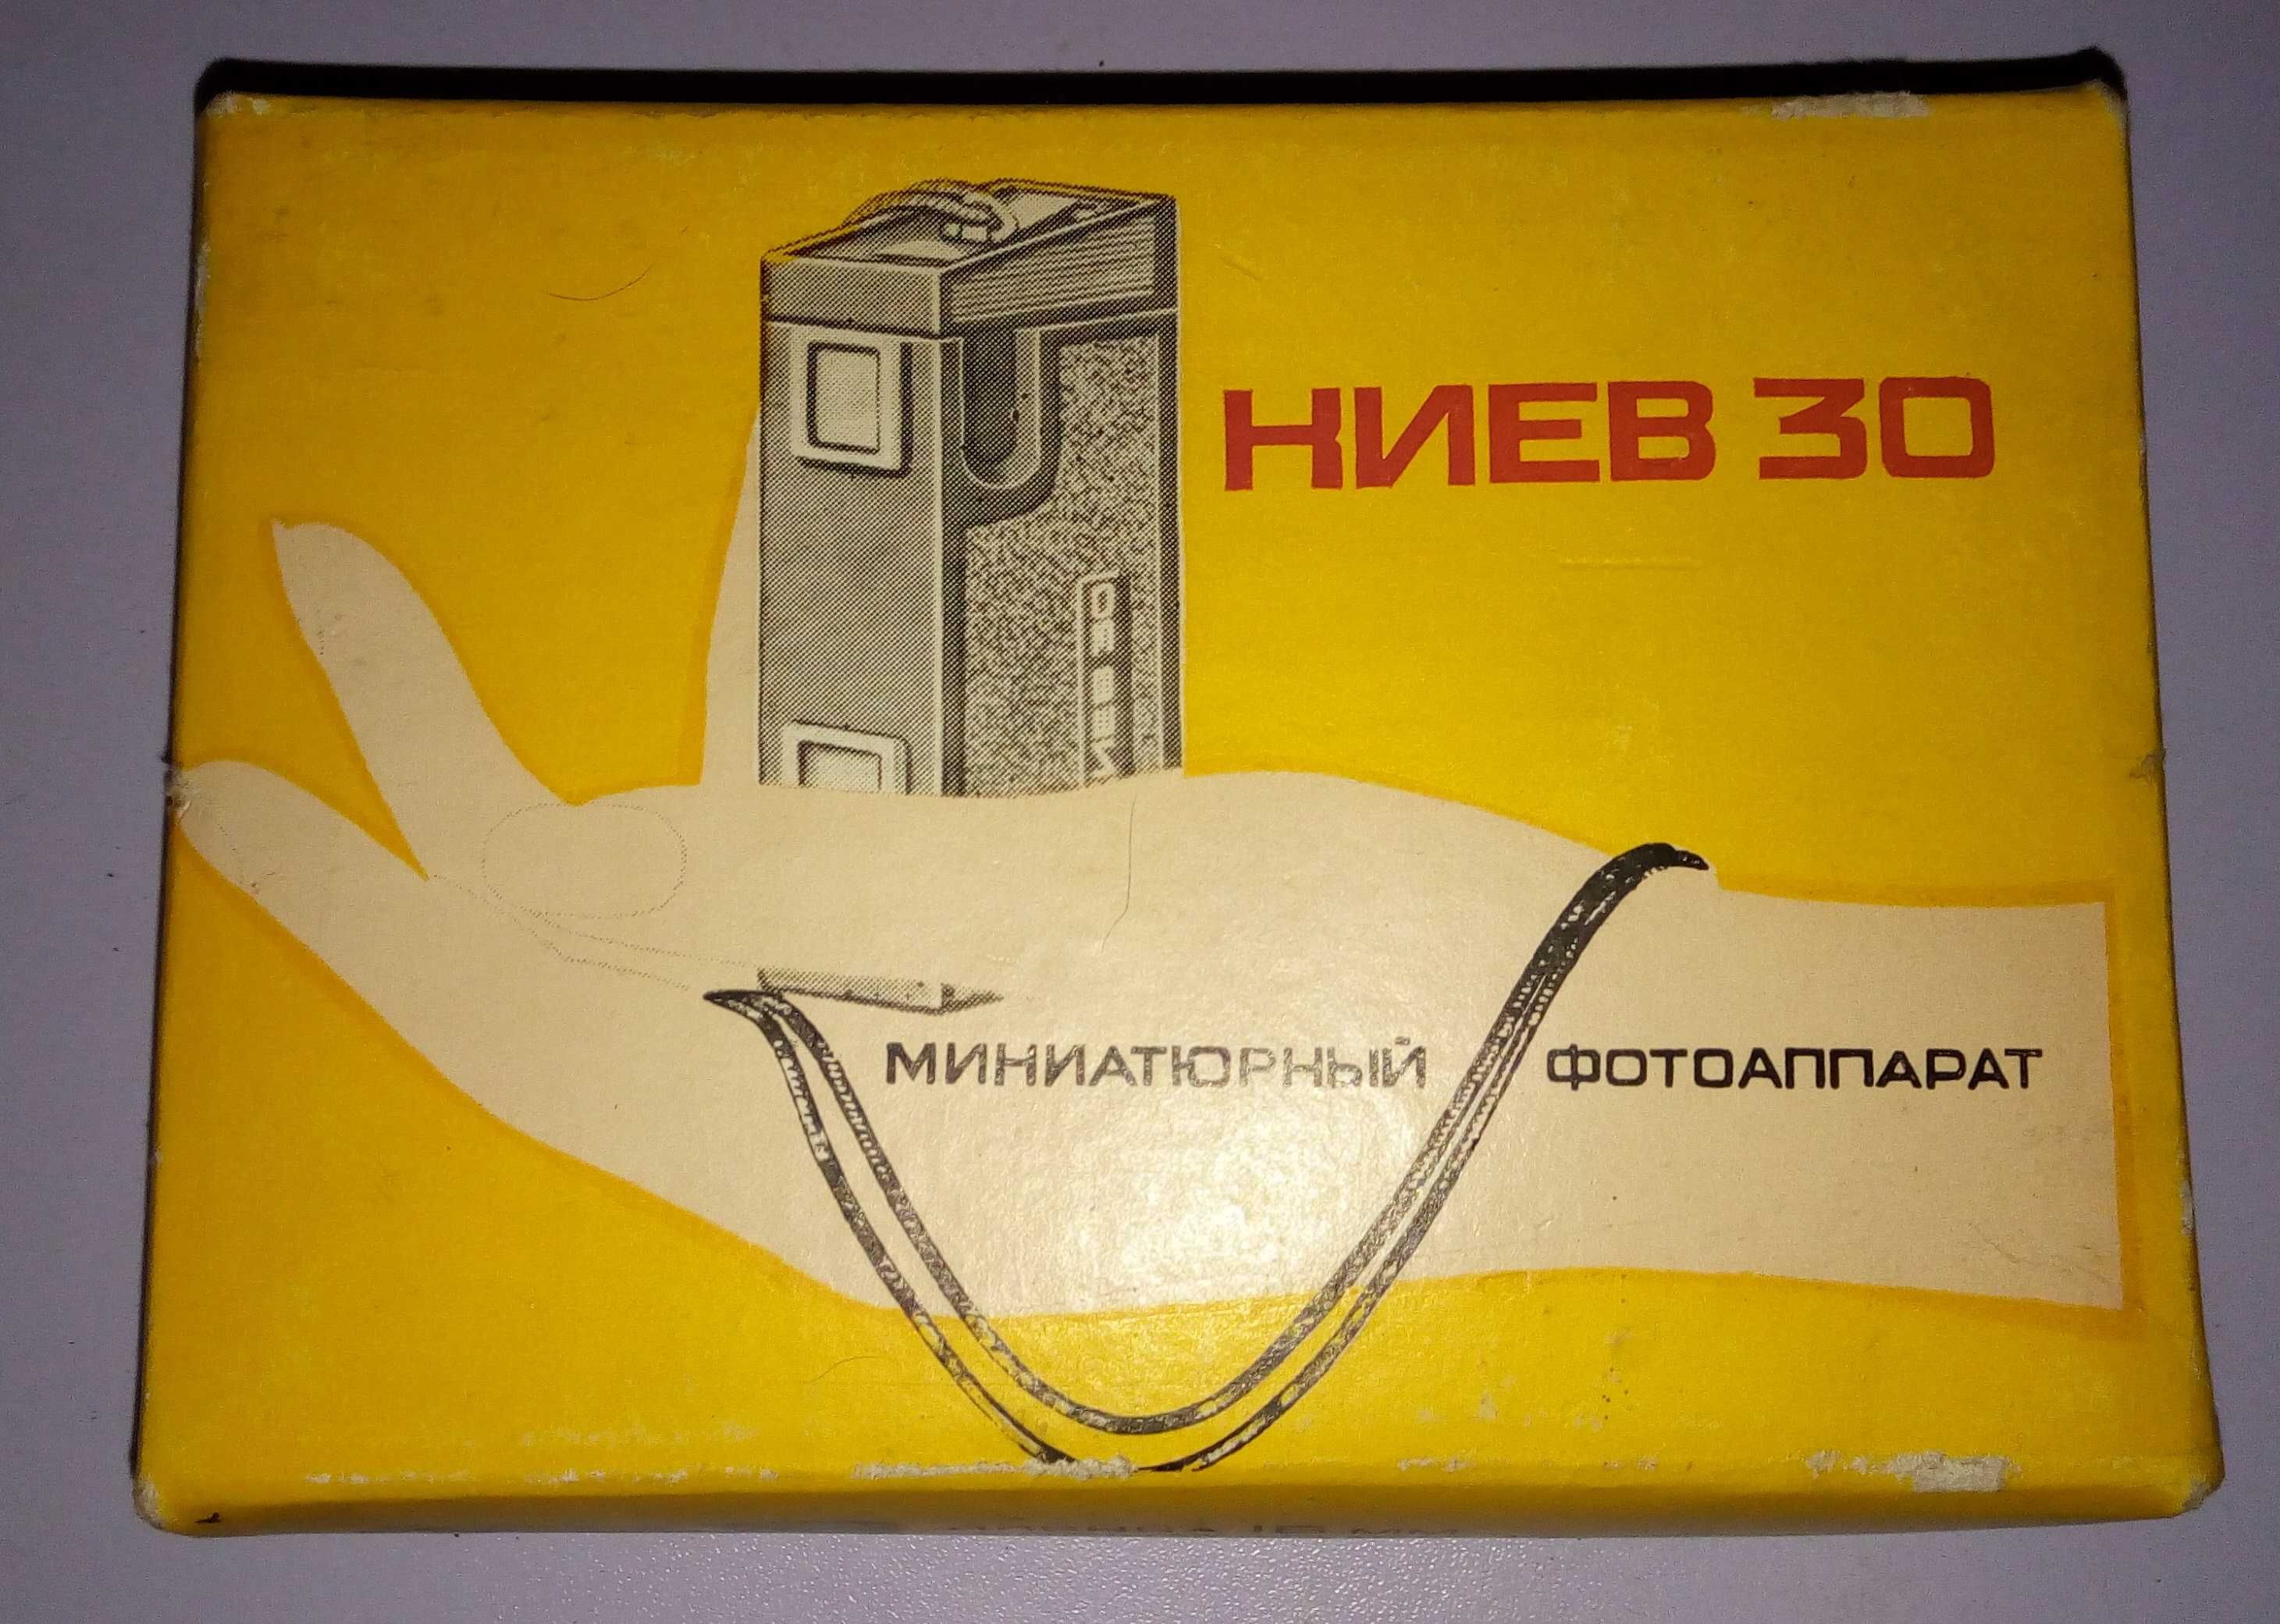 Миниатюрный шкальный фотоаппарат КИЕВ 30